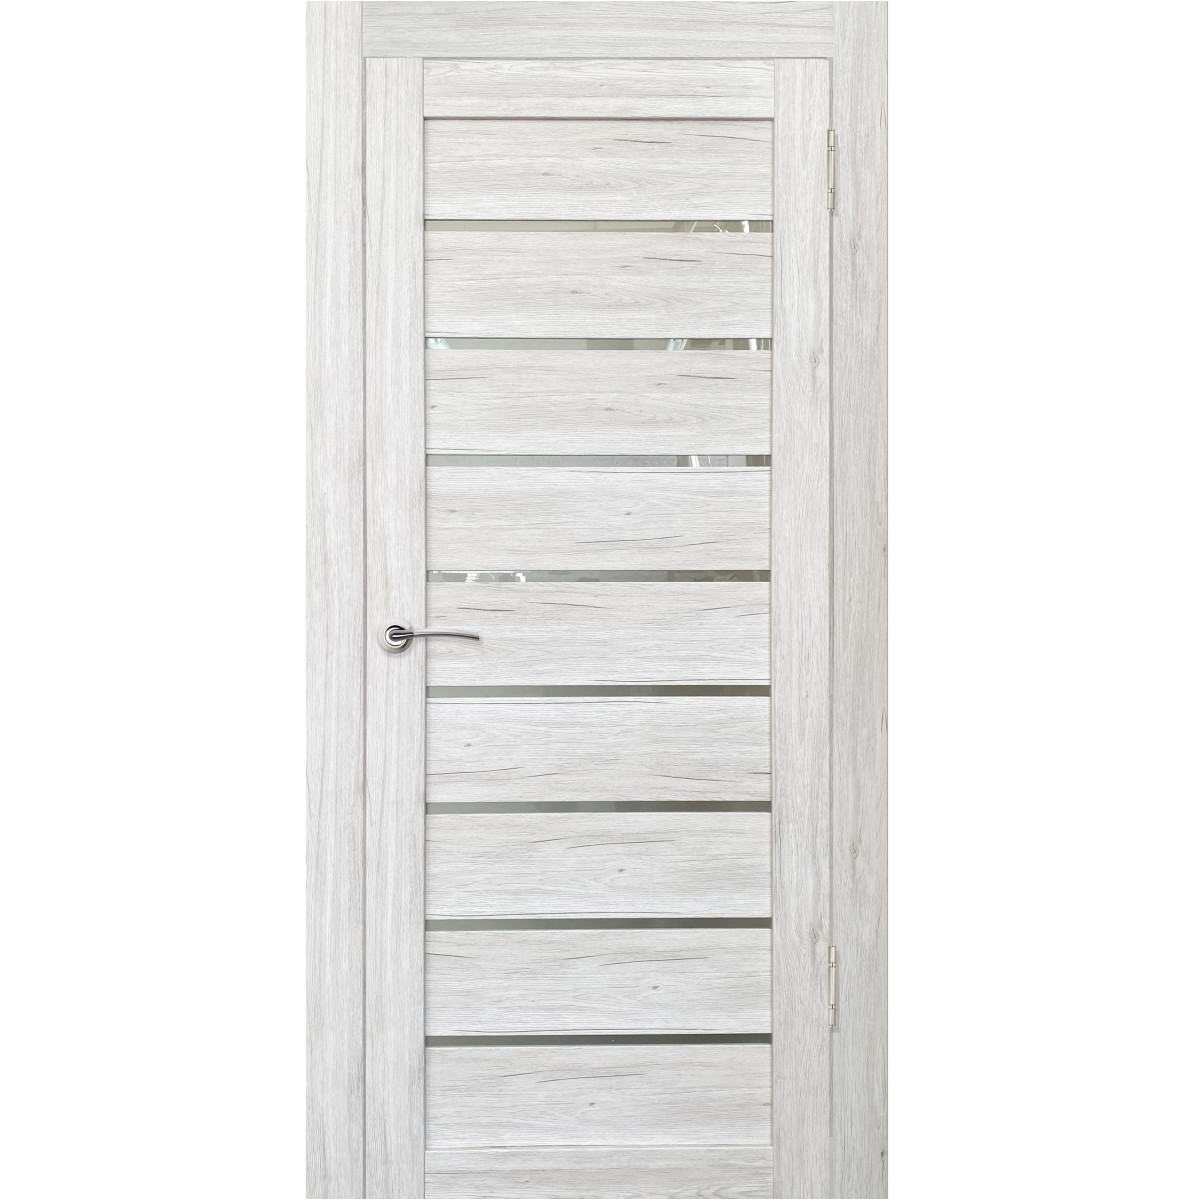 Дверь межкомнатная остеклённая Тиволи 80х200 см с фурнитурой, ПВХ, цвет рустик серый